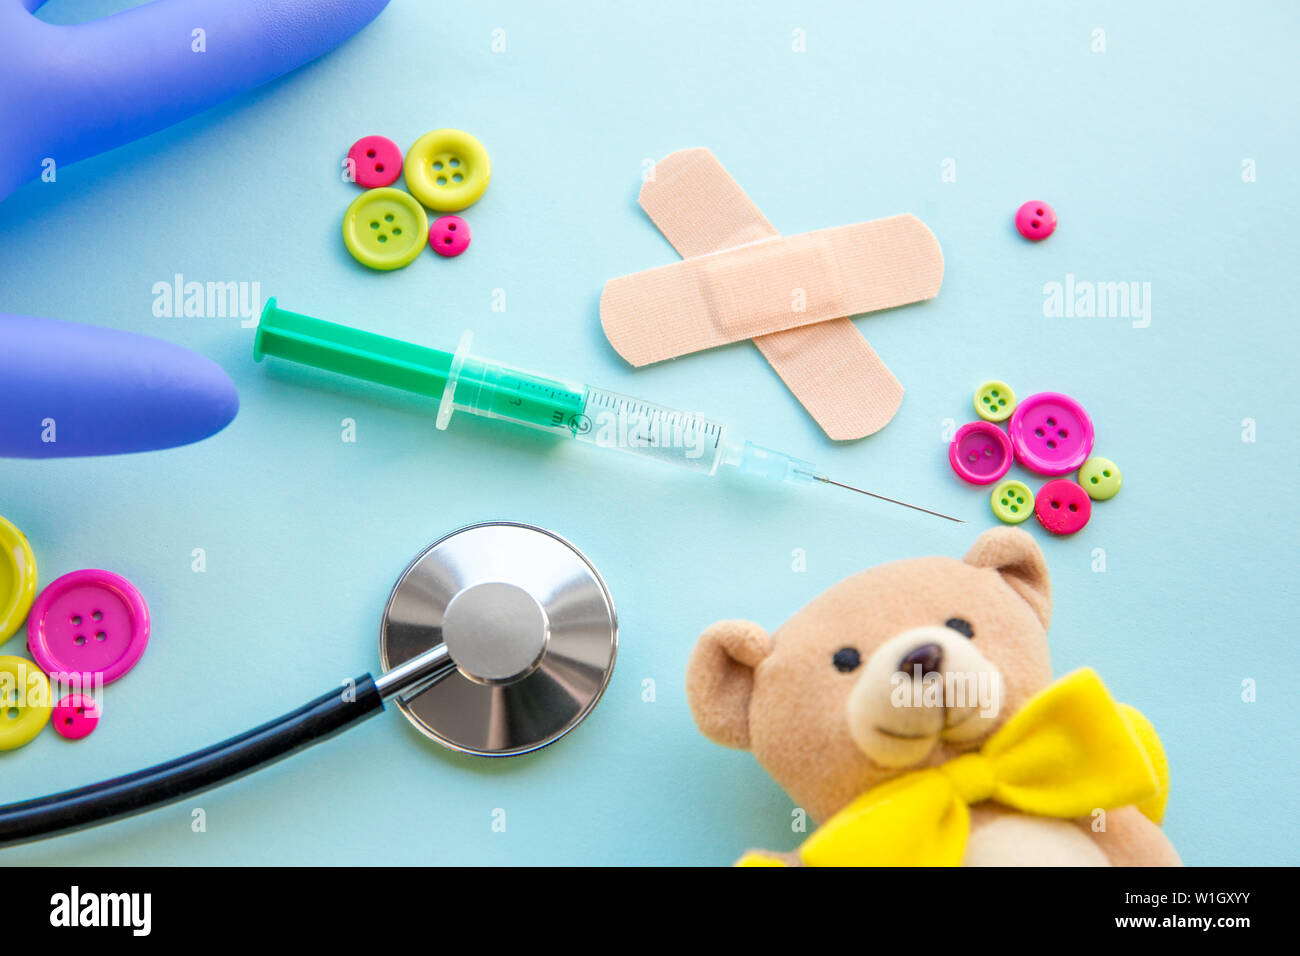 Kinder- arzt Termin Anzahl Konzept. Kalender mit Zahlen, Arzt, Kinder Spielzeug, Rosa und grüne Tasten. Flach. Stockfoto